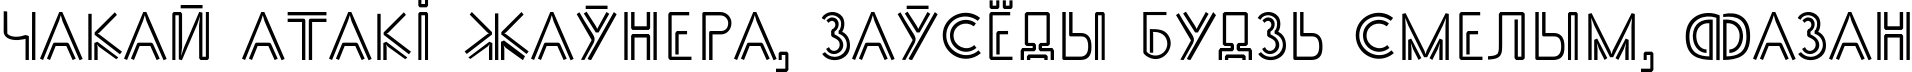 Пример написания шрифтом SS_Adec2.0_main текста на белорусском